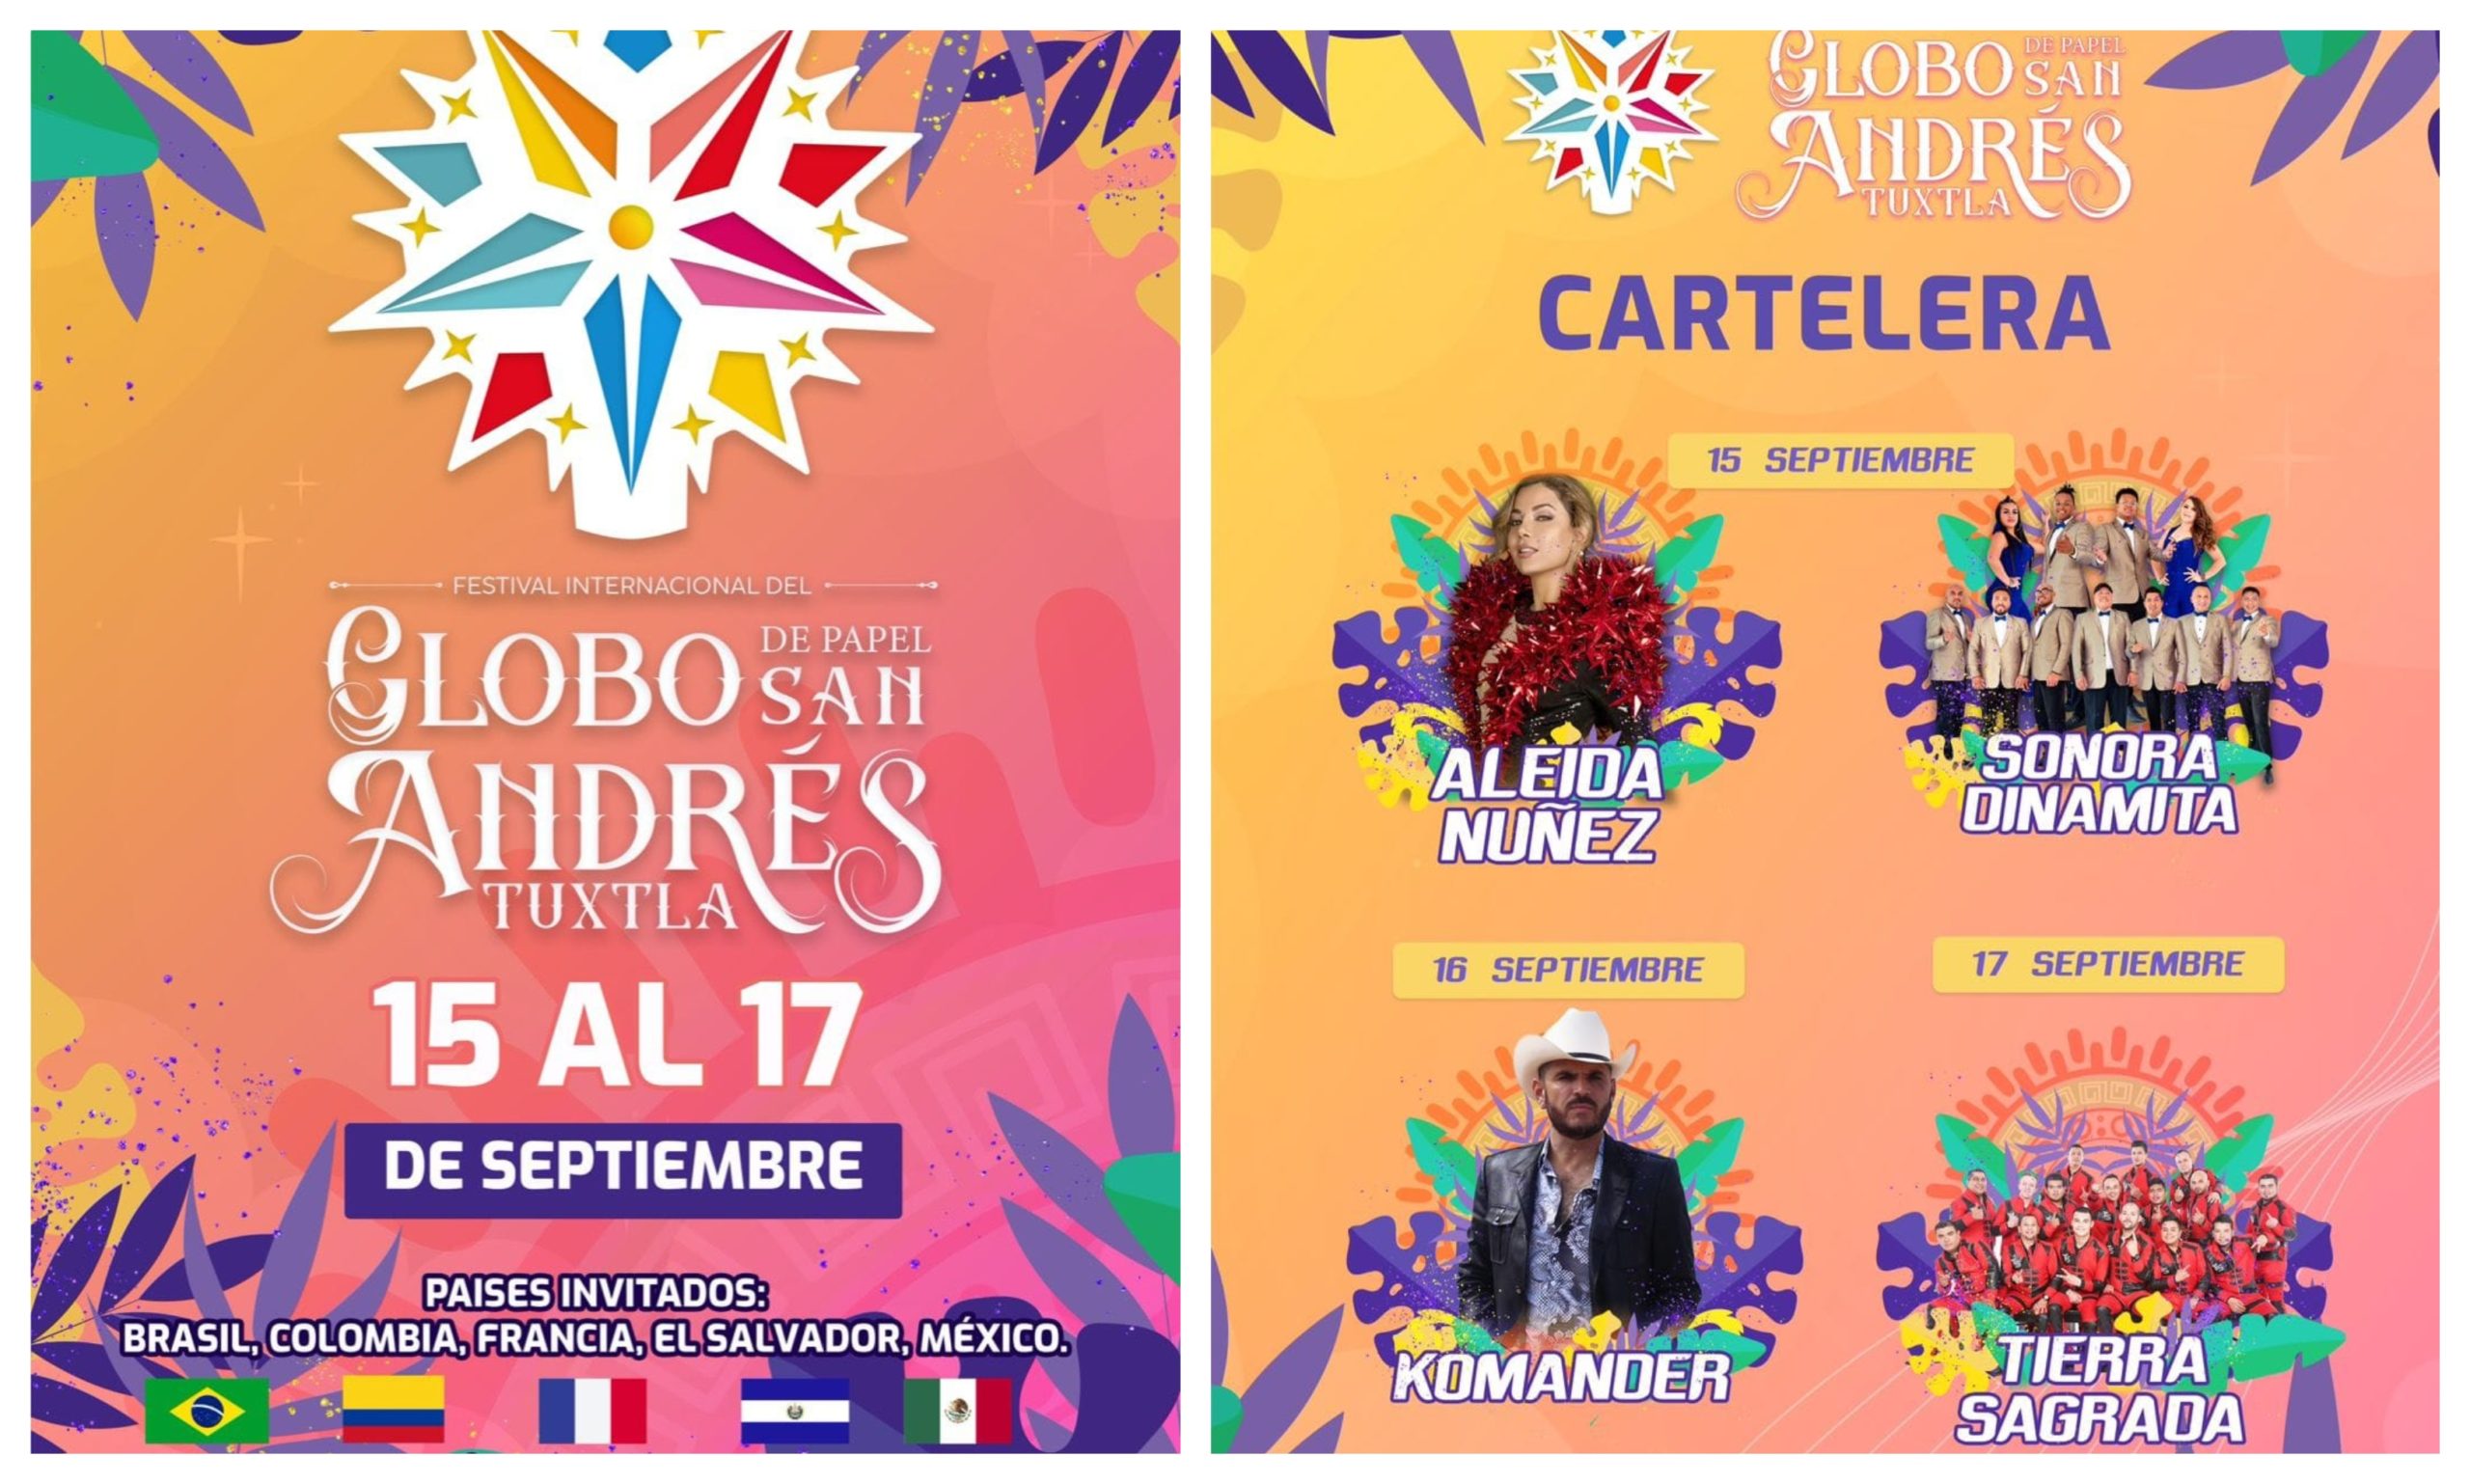 Brasil, Colombia, Francia y El Salvador estarán presentes en Festival Internacional del Globo de Papel